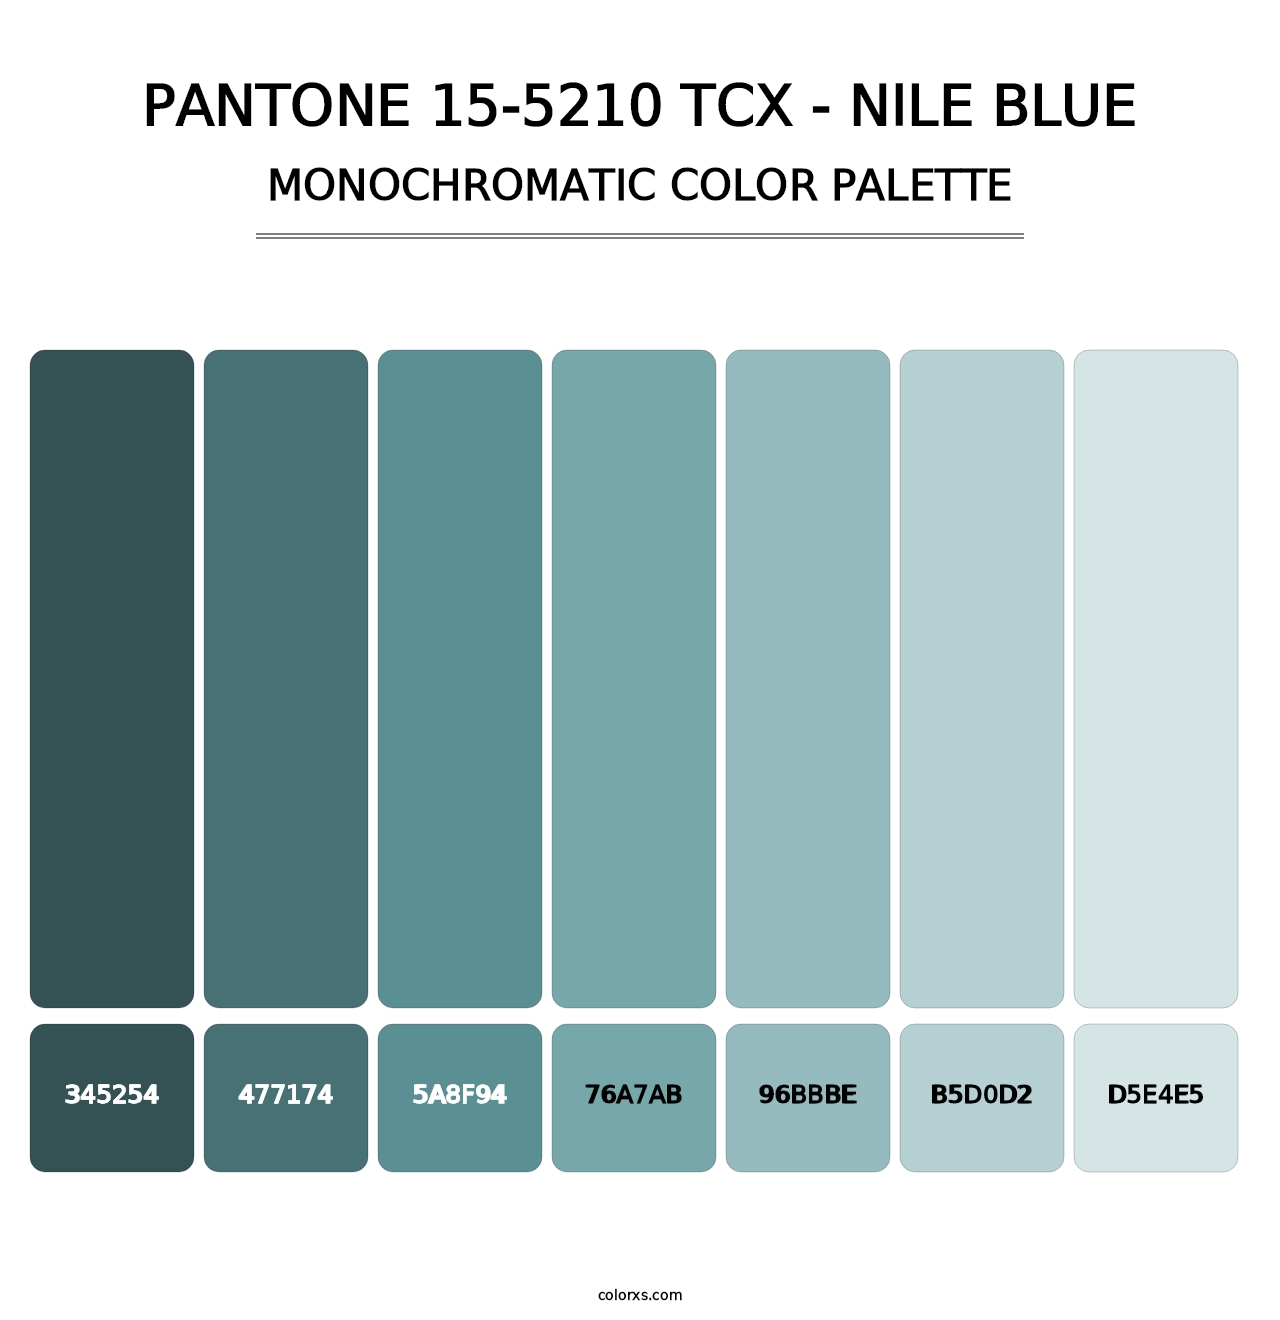 PANTONE 15-5210 TCX - Nile Blue - Monochromatic Color Palette